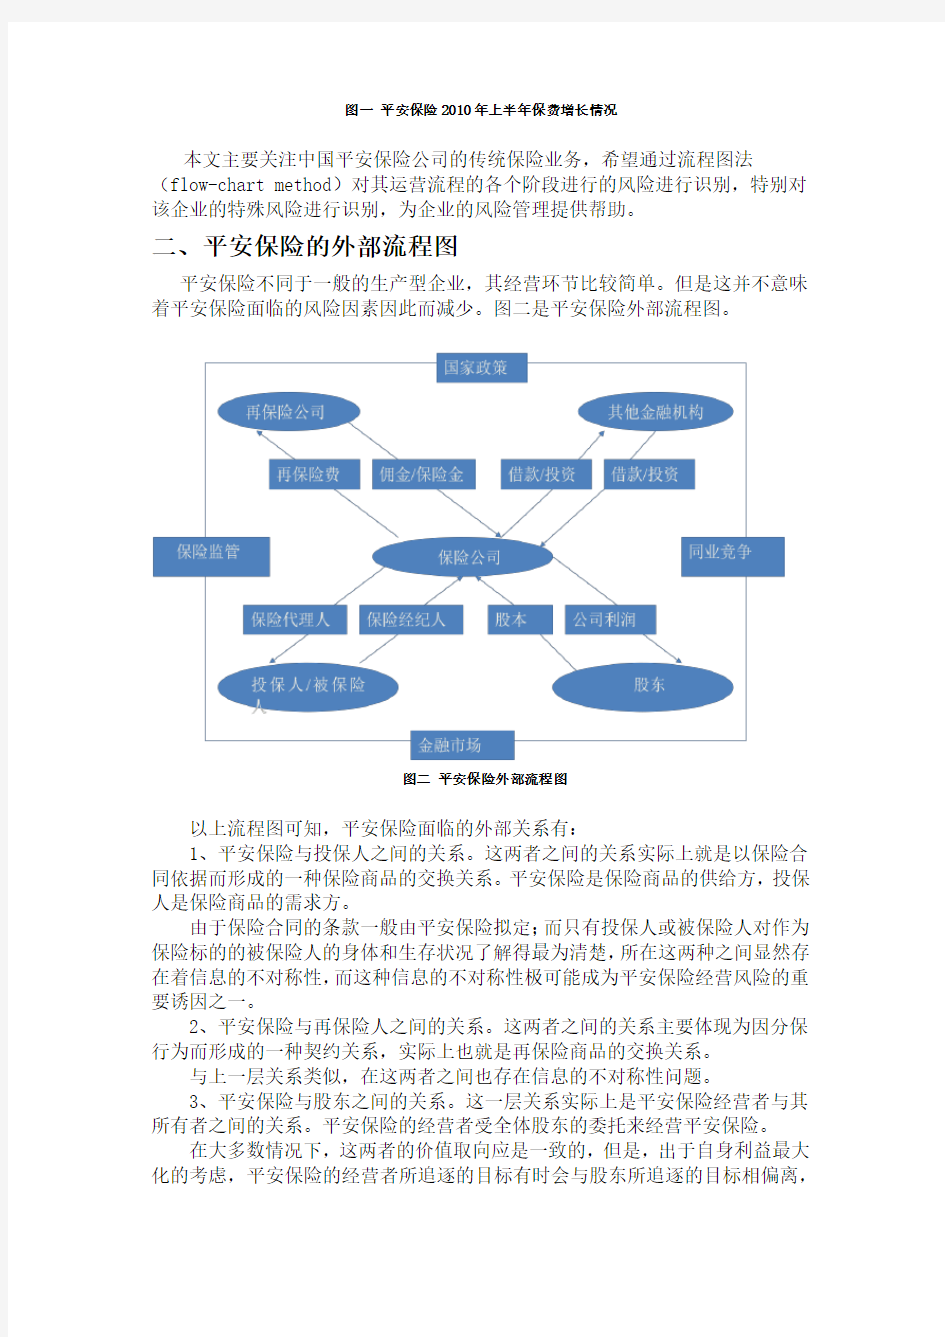 中国平安保险公司的风险识别